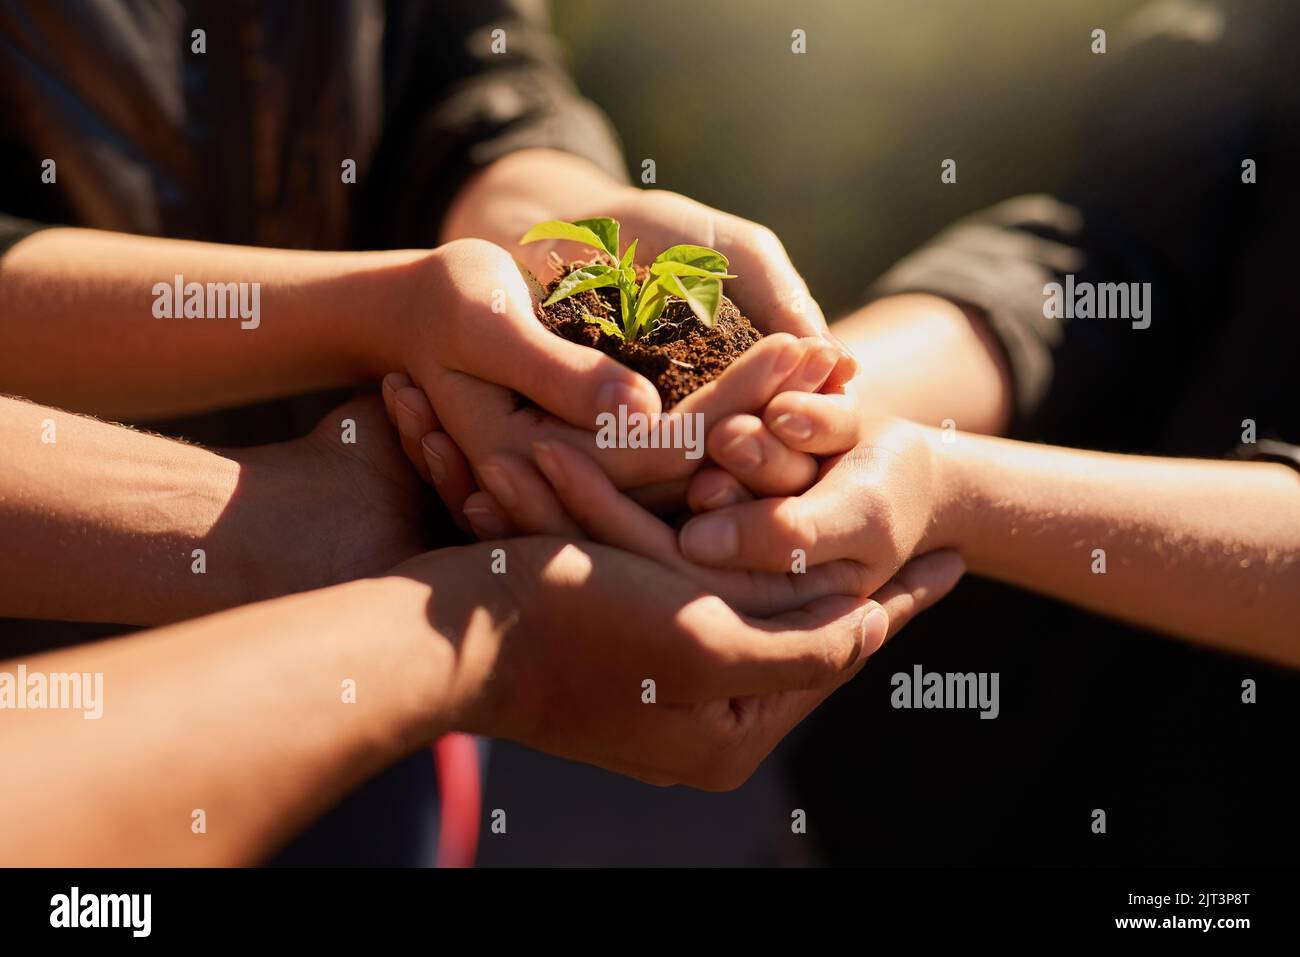 Seien Sie die Veränderung, die Sie sehen möchten. Eine Gruppe von Menschen, die eine Pflanze halten, die aus dem Boden wächst. Stockfoto